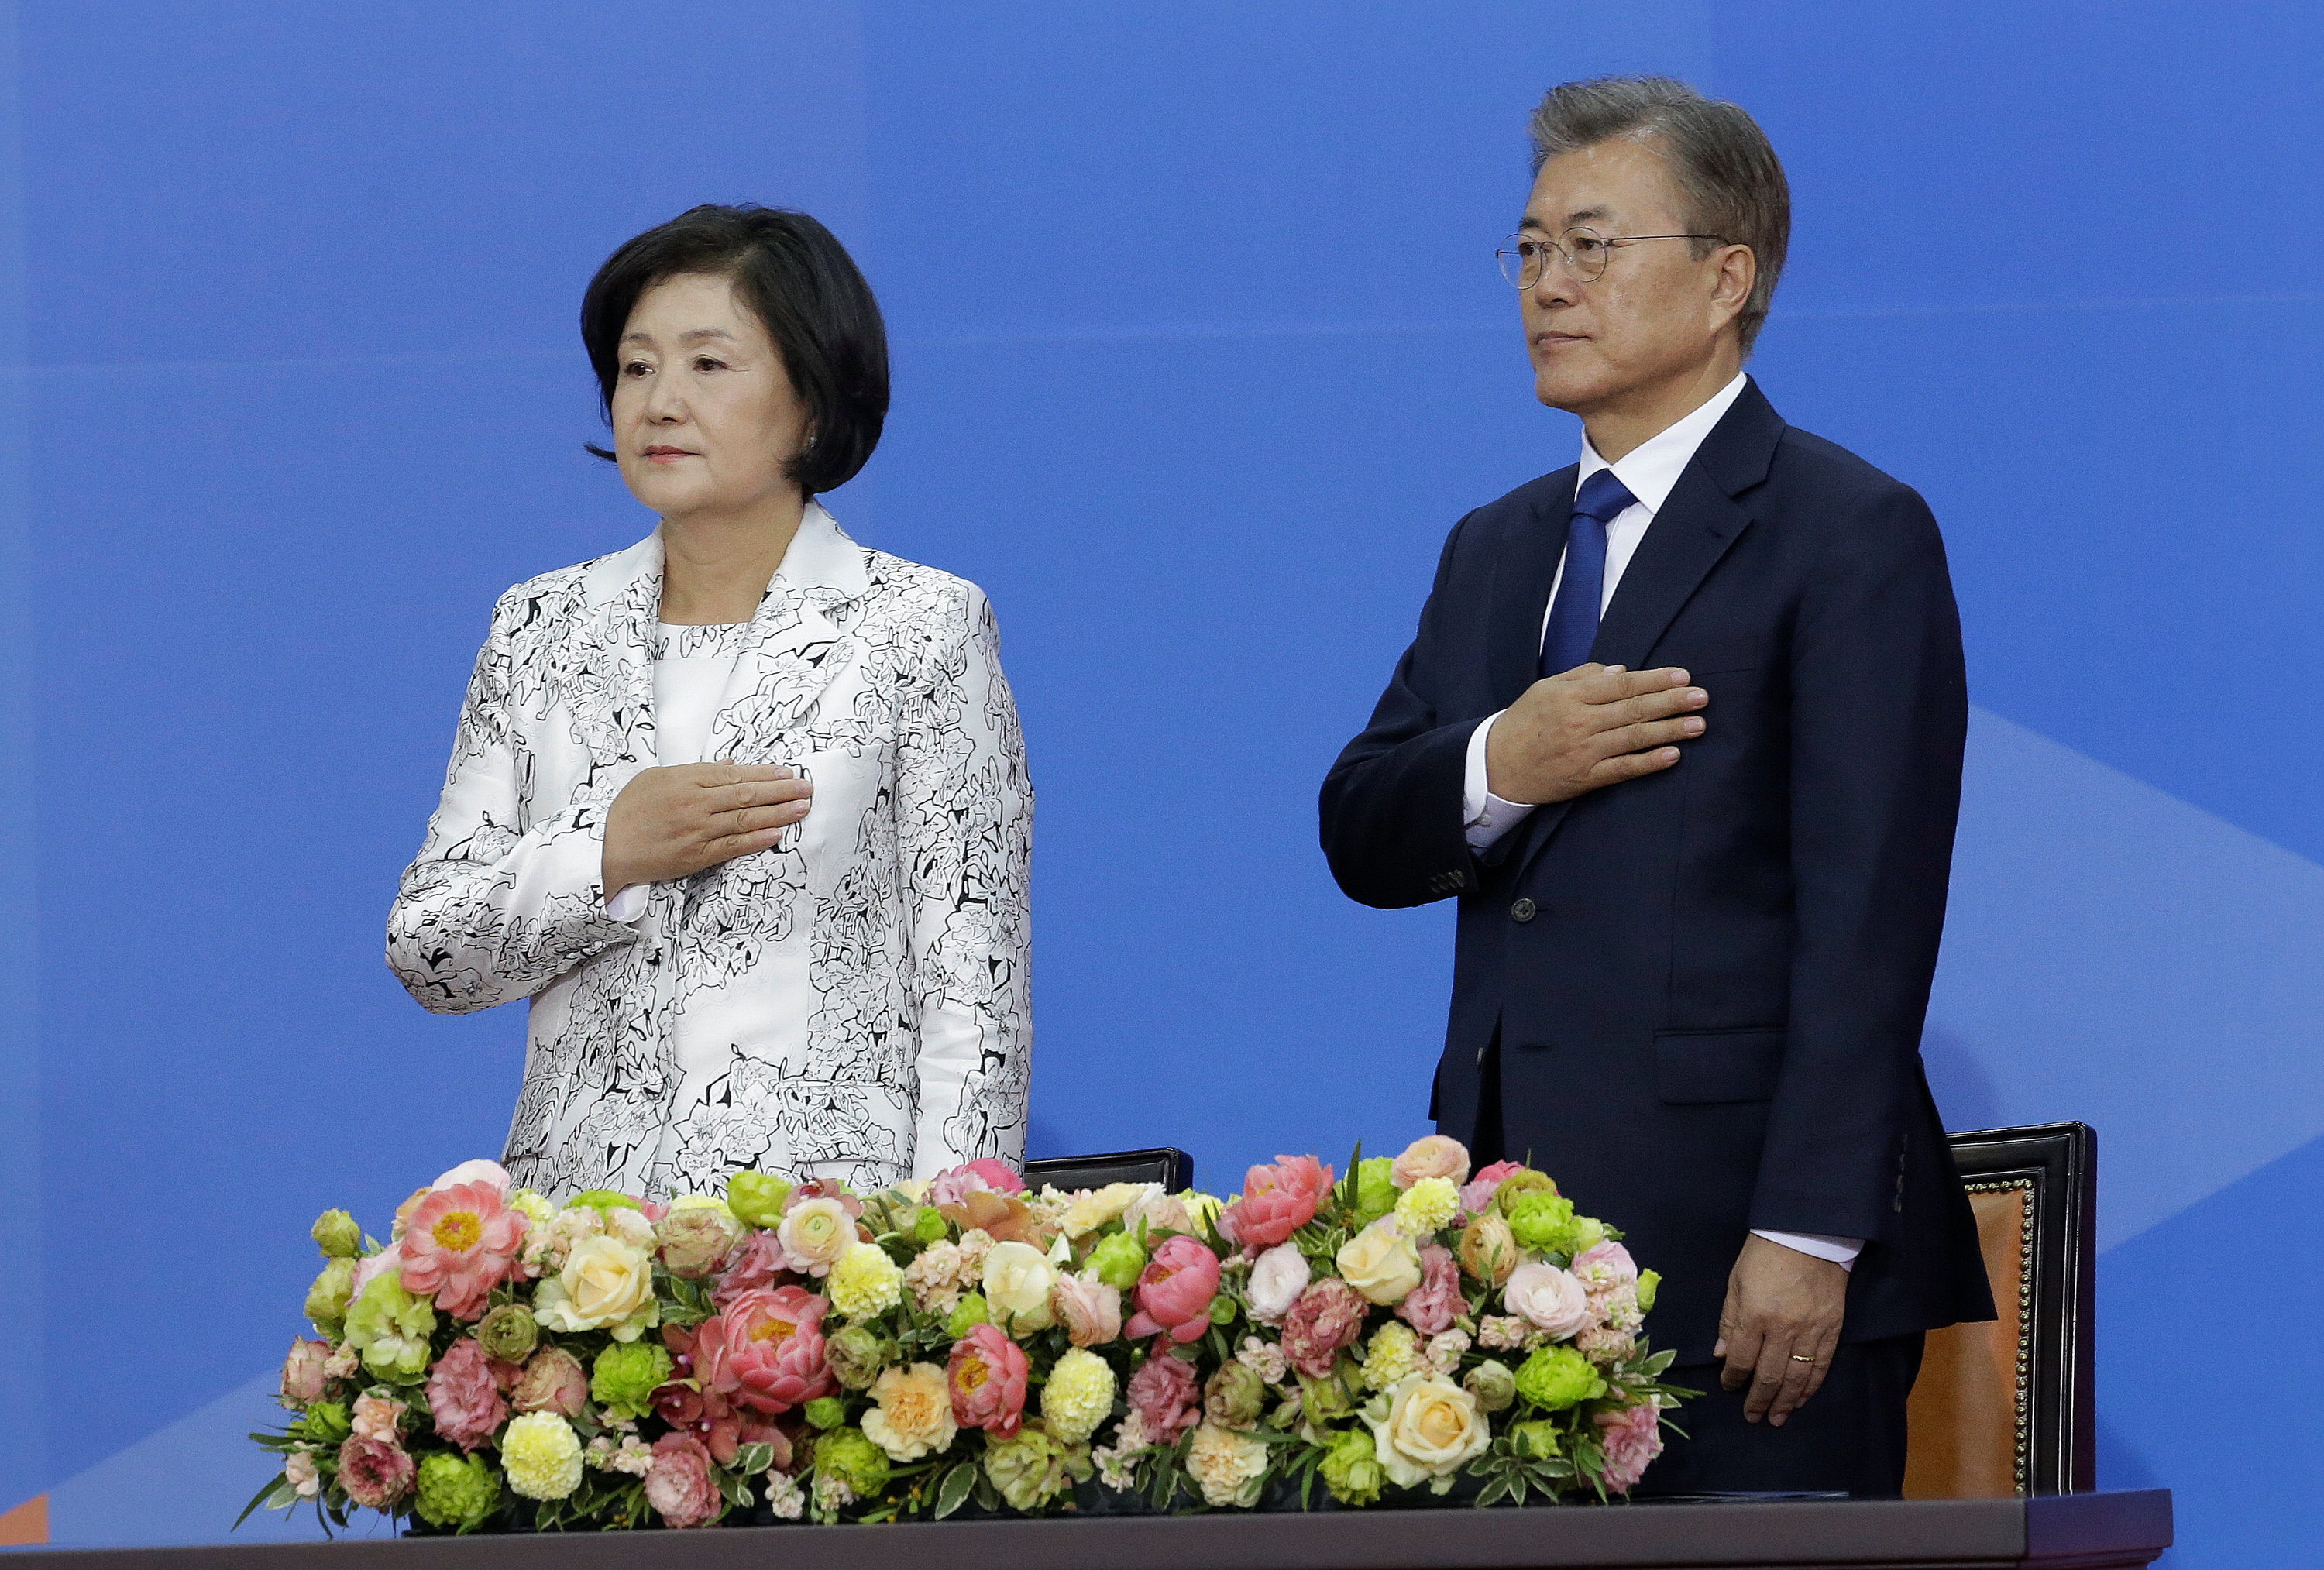 مراسم تنصيب رئيس كوريا الجنوبية الجديد